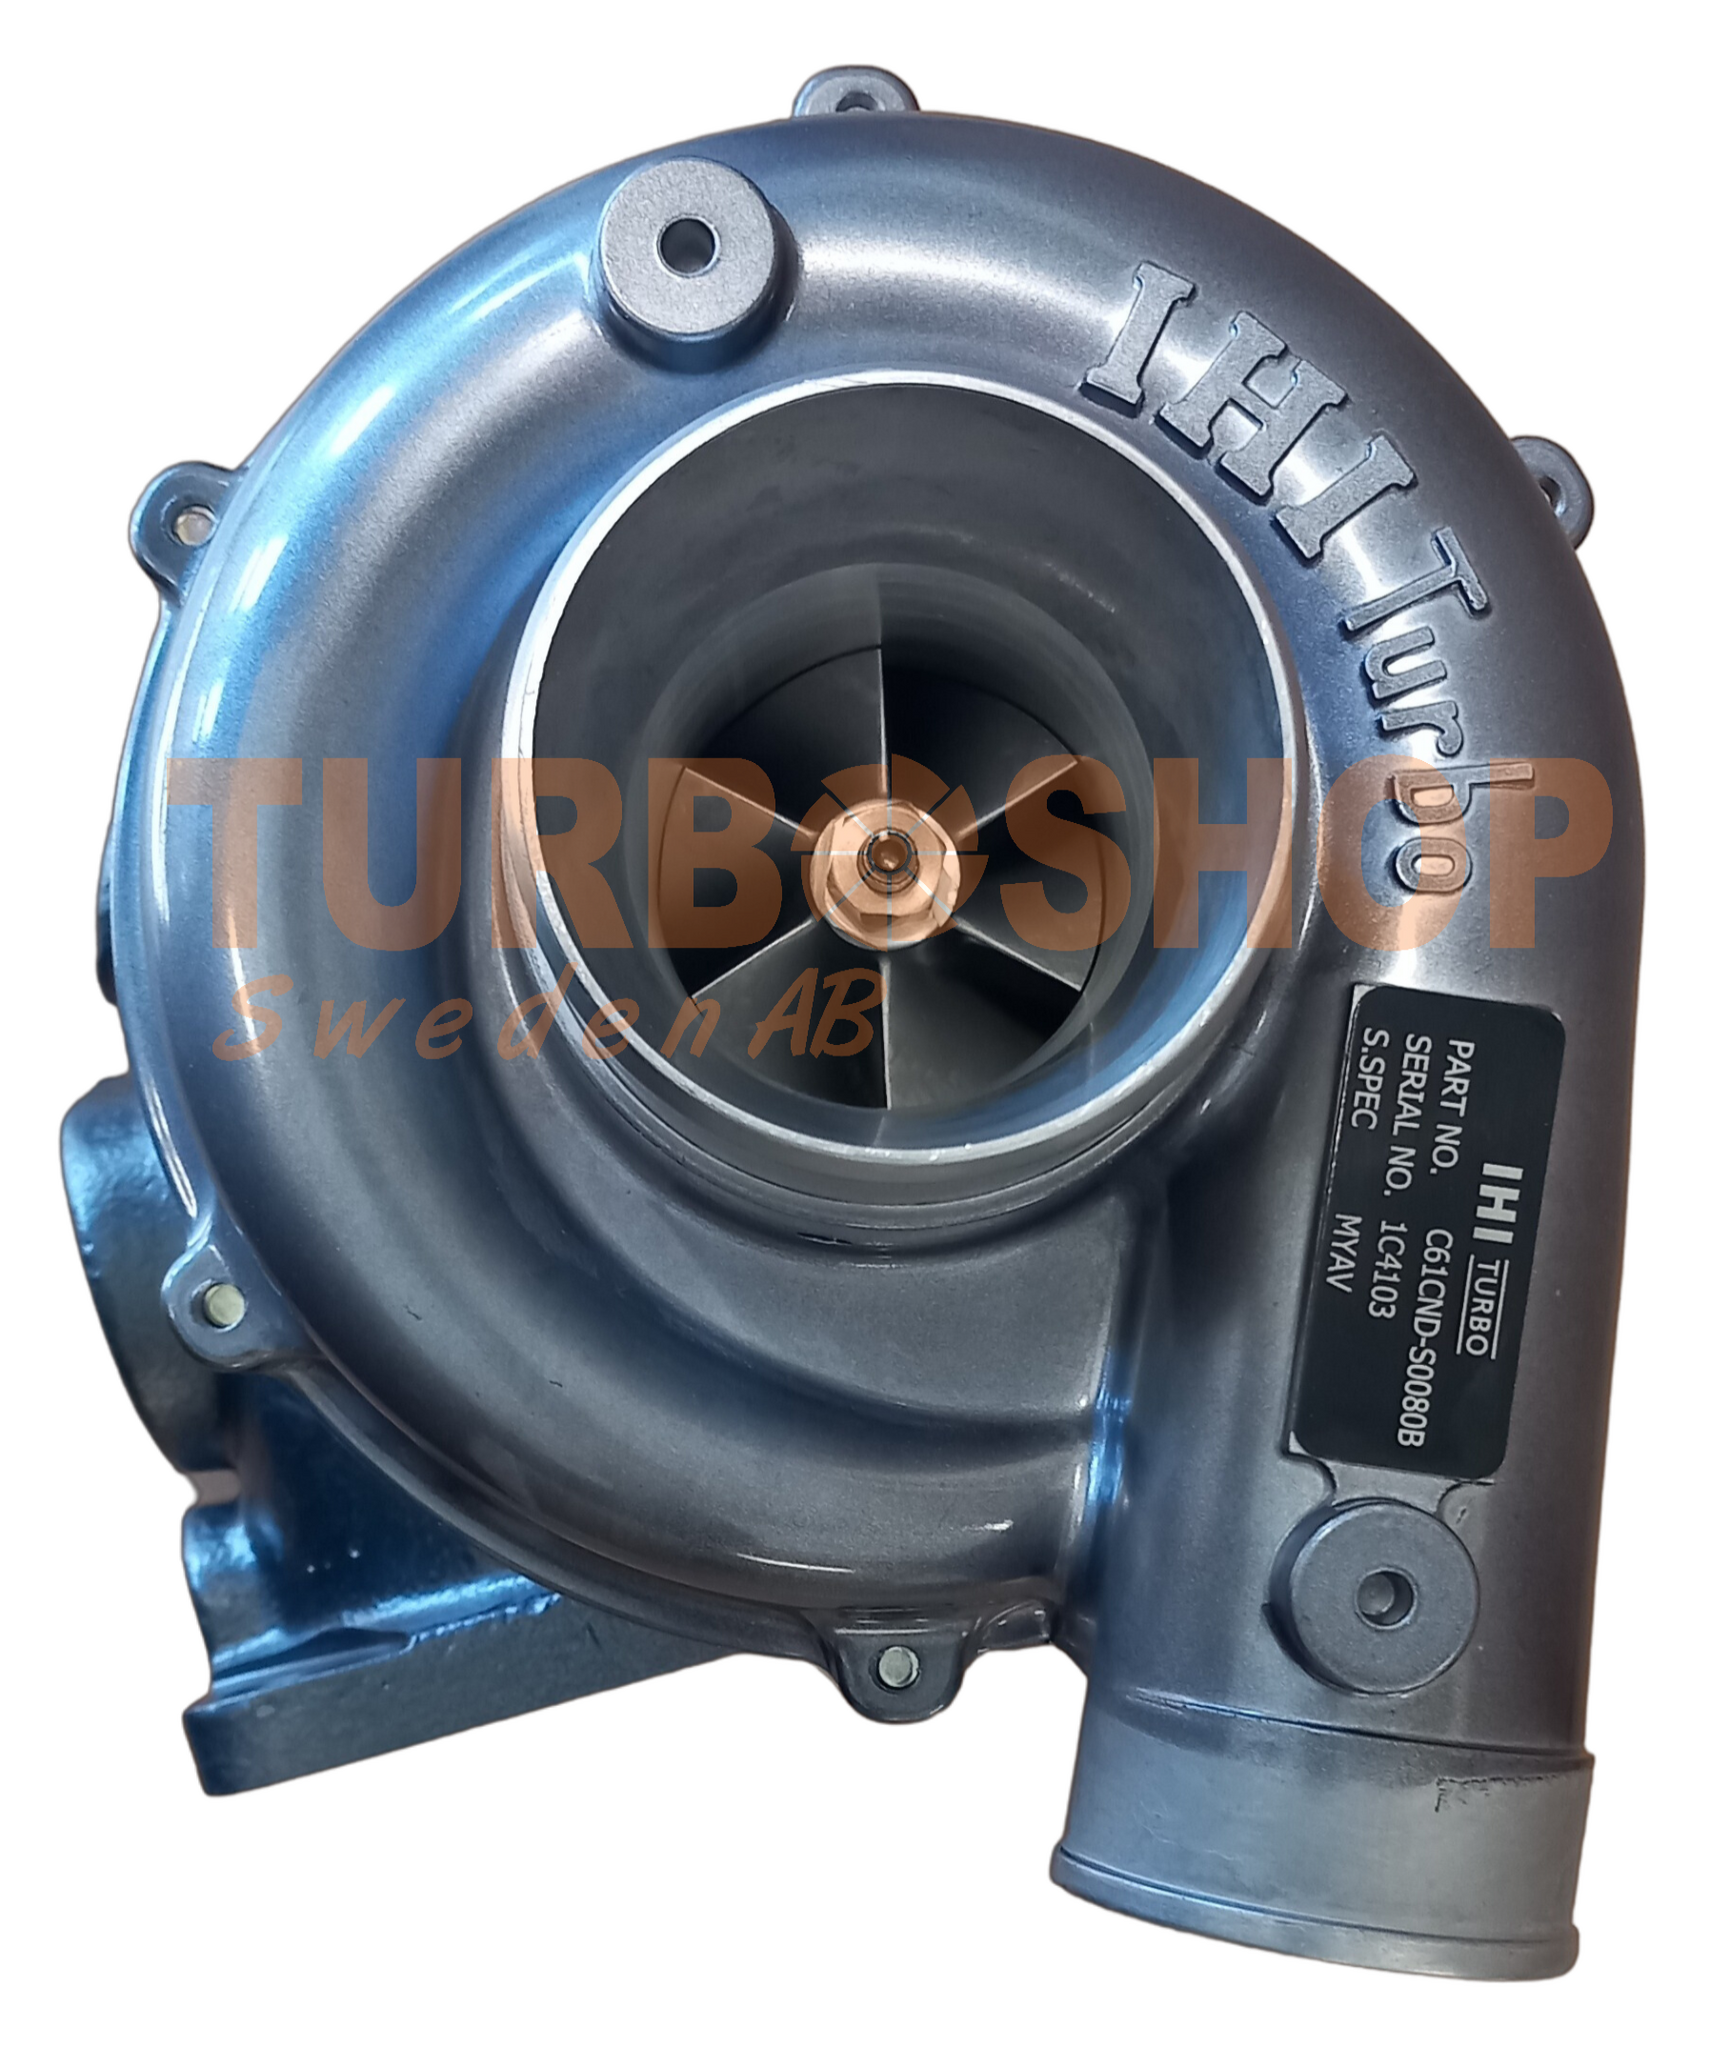 MYAV IHI renoverad turbo med rostfri hylsa. Oem nummer : 6T-583, 119195-18031, 119195-18030 ( Bytesturbo )